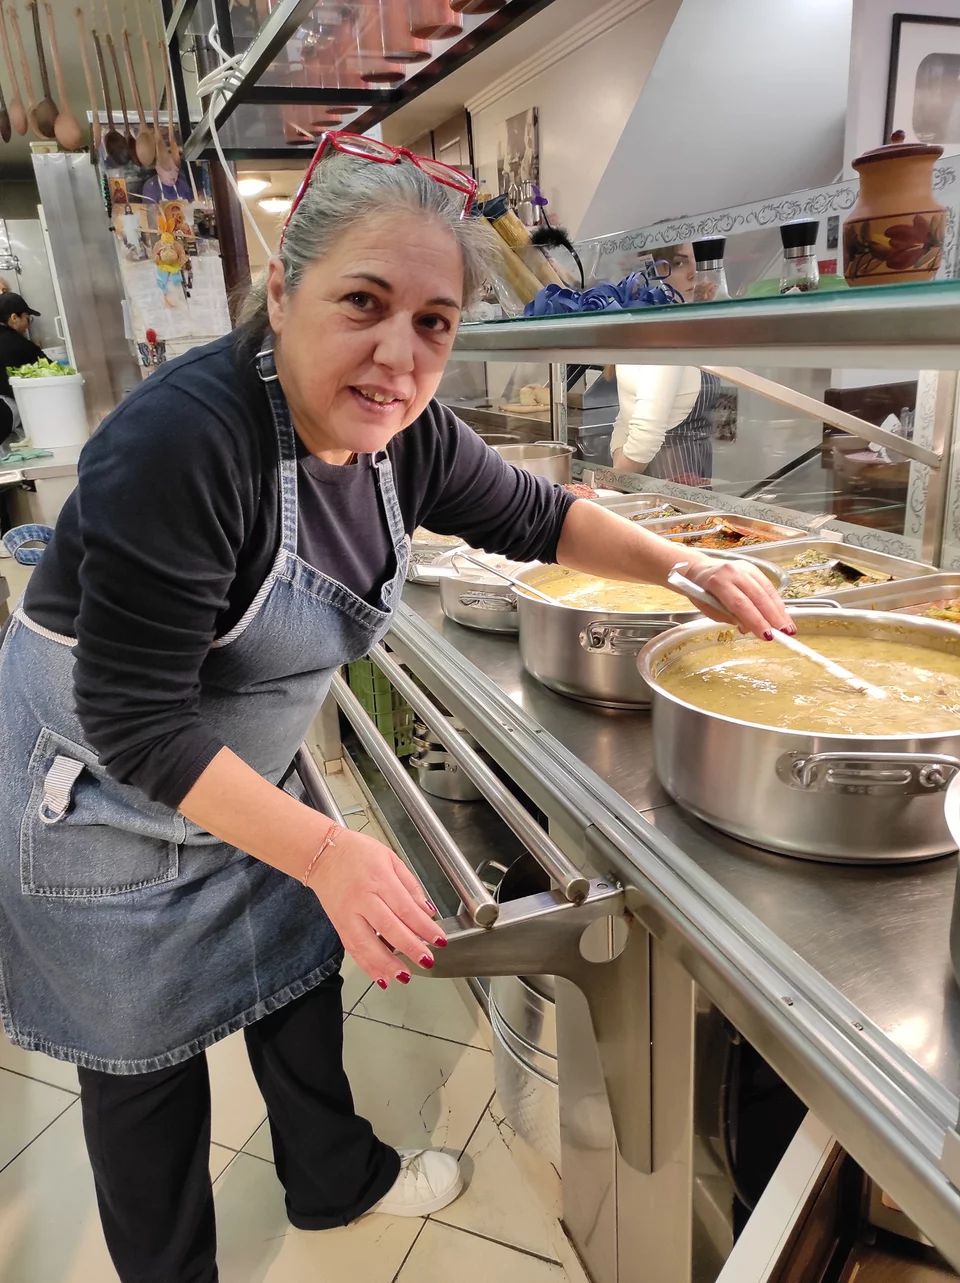 Εδώ και 22 χρόνια η Ράνια γεμίζει τις κατσαρόλες των πελατών με μαγειρίτσα το Μεγάλο Σάββατο